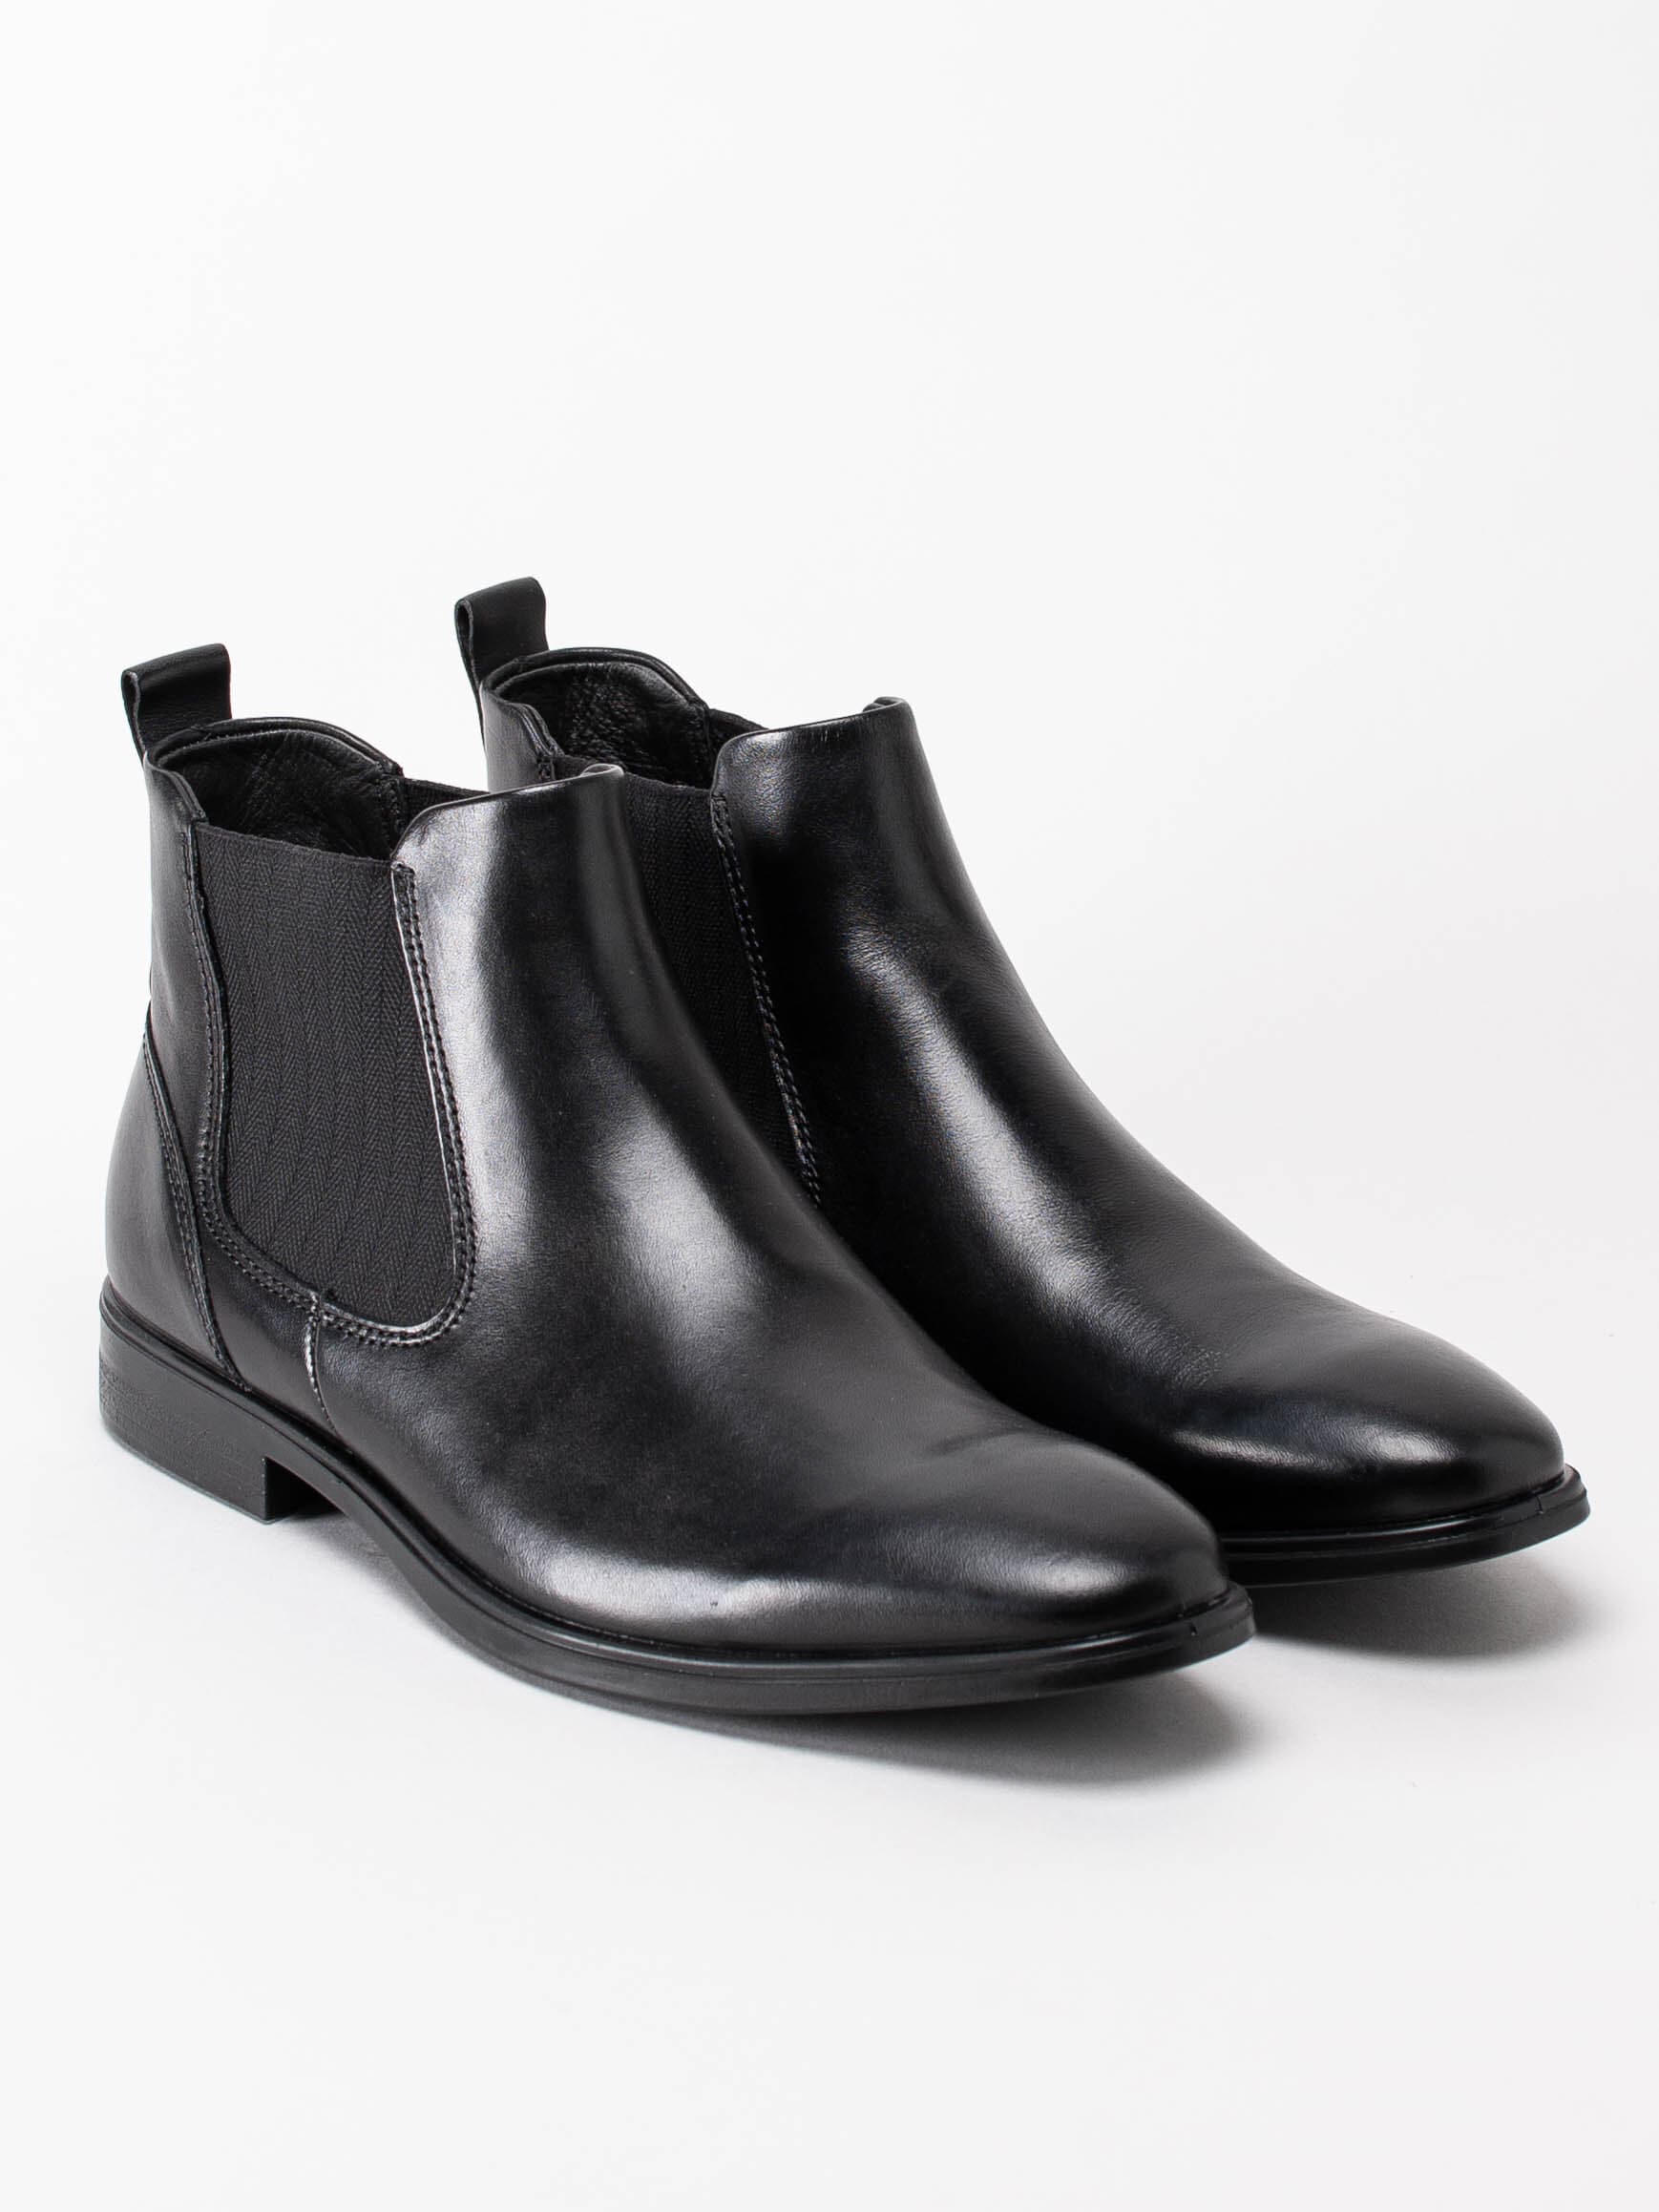 Ecco - Melbourne - Svarta klassiska boots i skinn